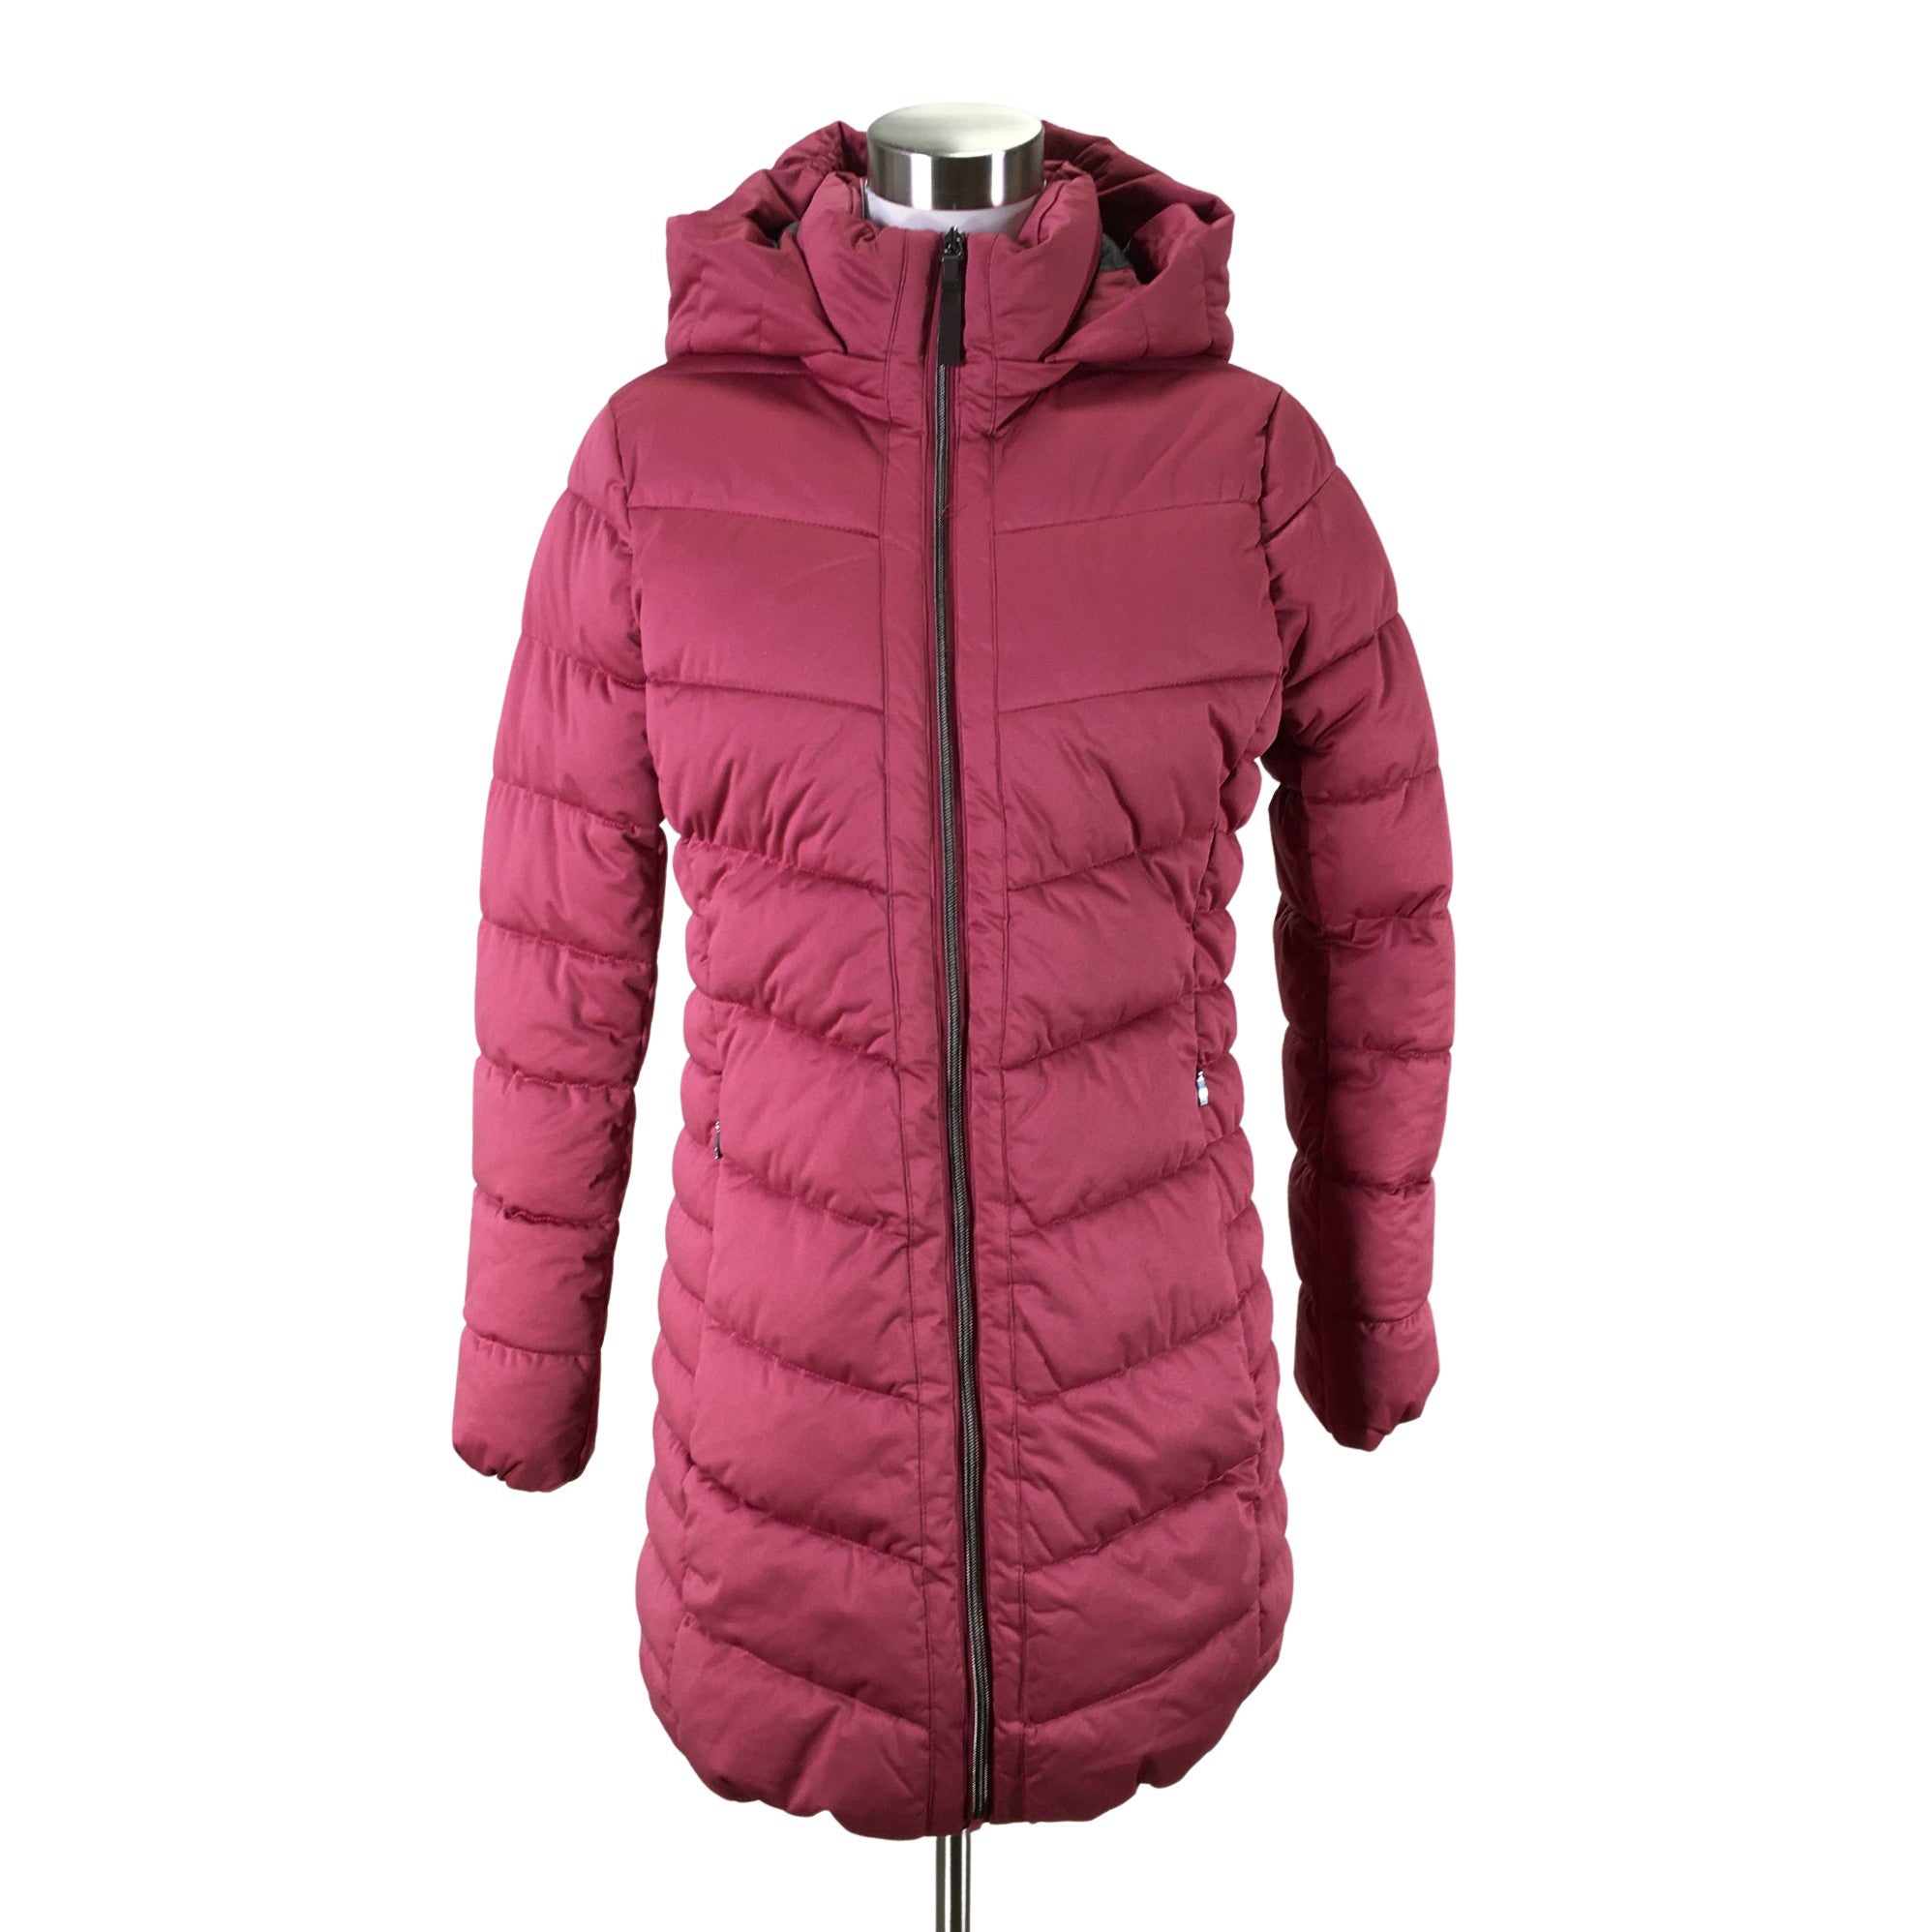 Besmettelijke ziekte elegant Agressief Women's Esprit Winter jacket, size 36 (Pink) | Emmy